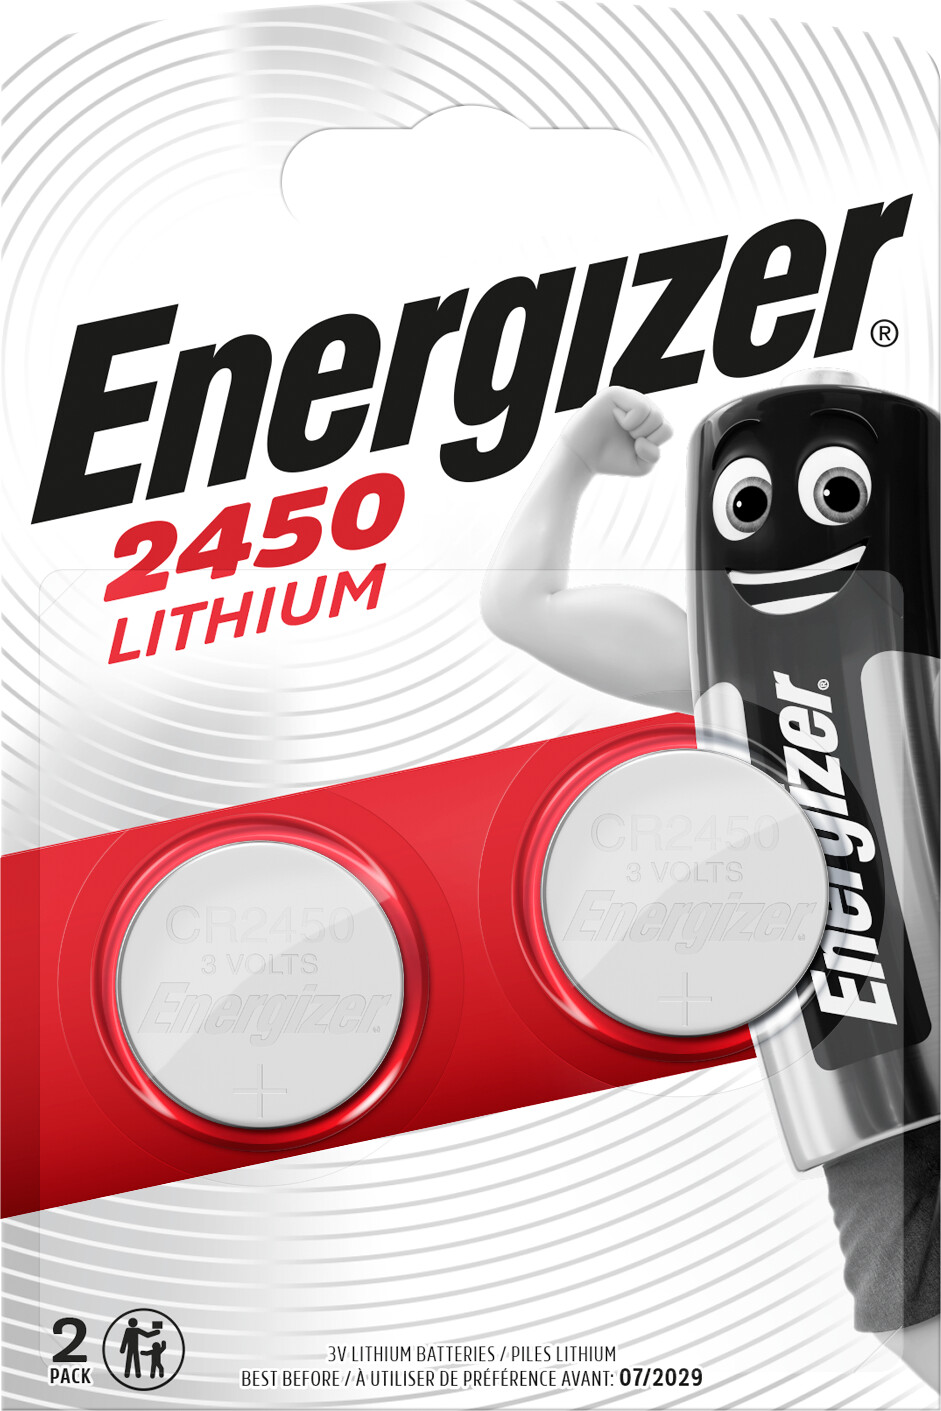 Billede af Energizer - Lithium S Cr2450 (2-pak) hos Gucca.dk